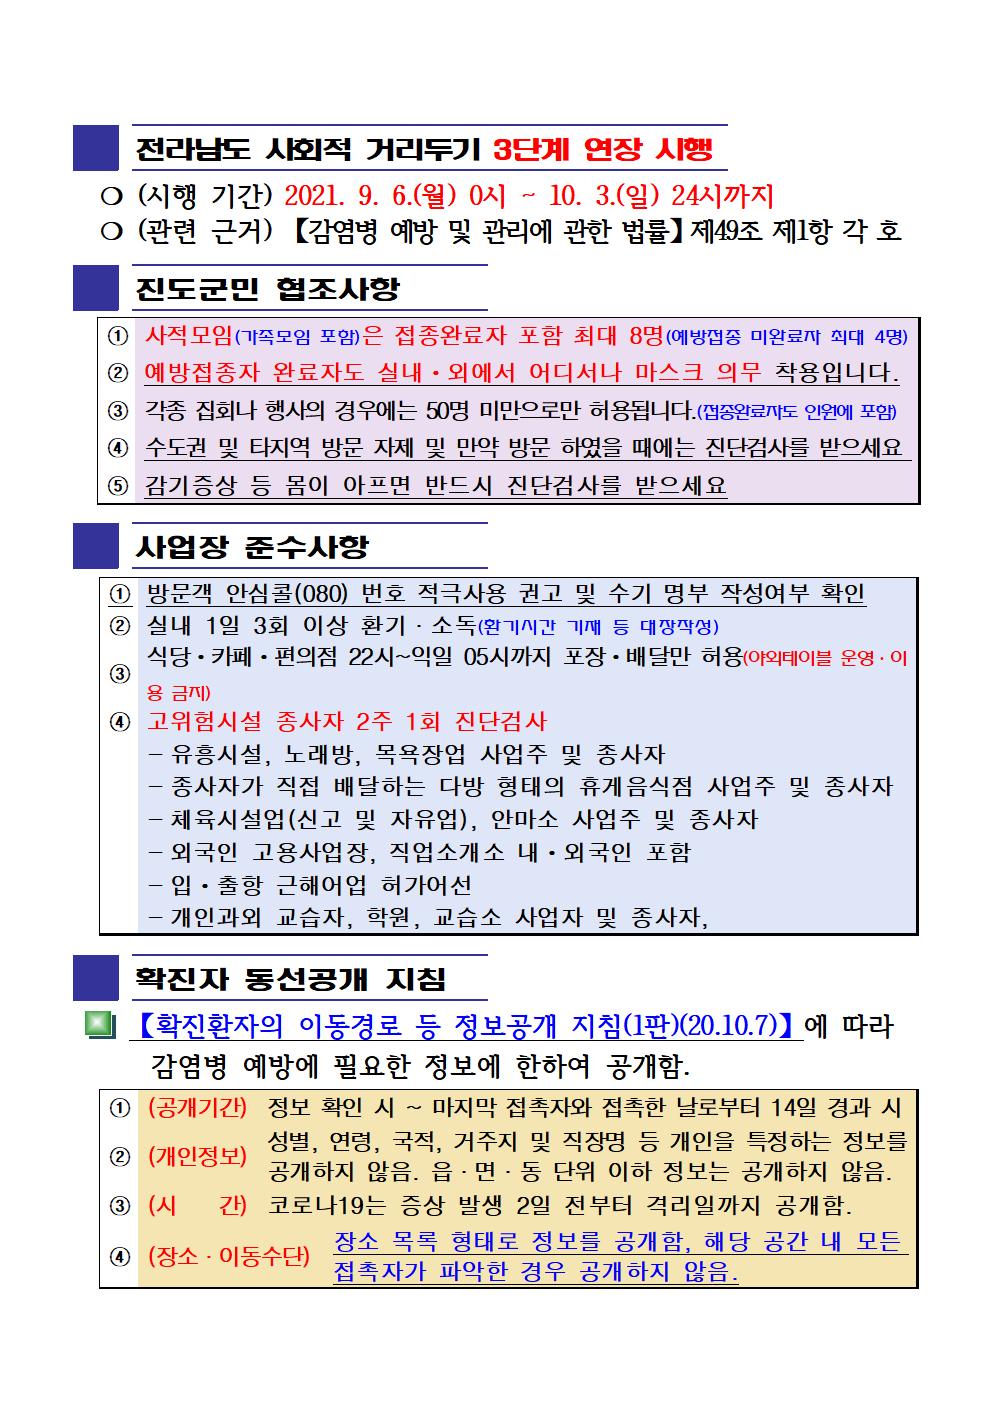 2021년 코로나 19 대응 일일상황보고(9월 29일 24시 기준) 첨부#2